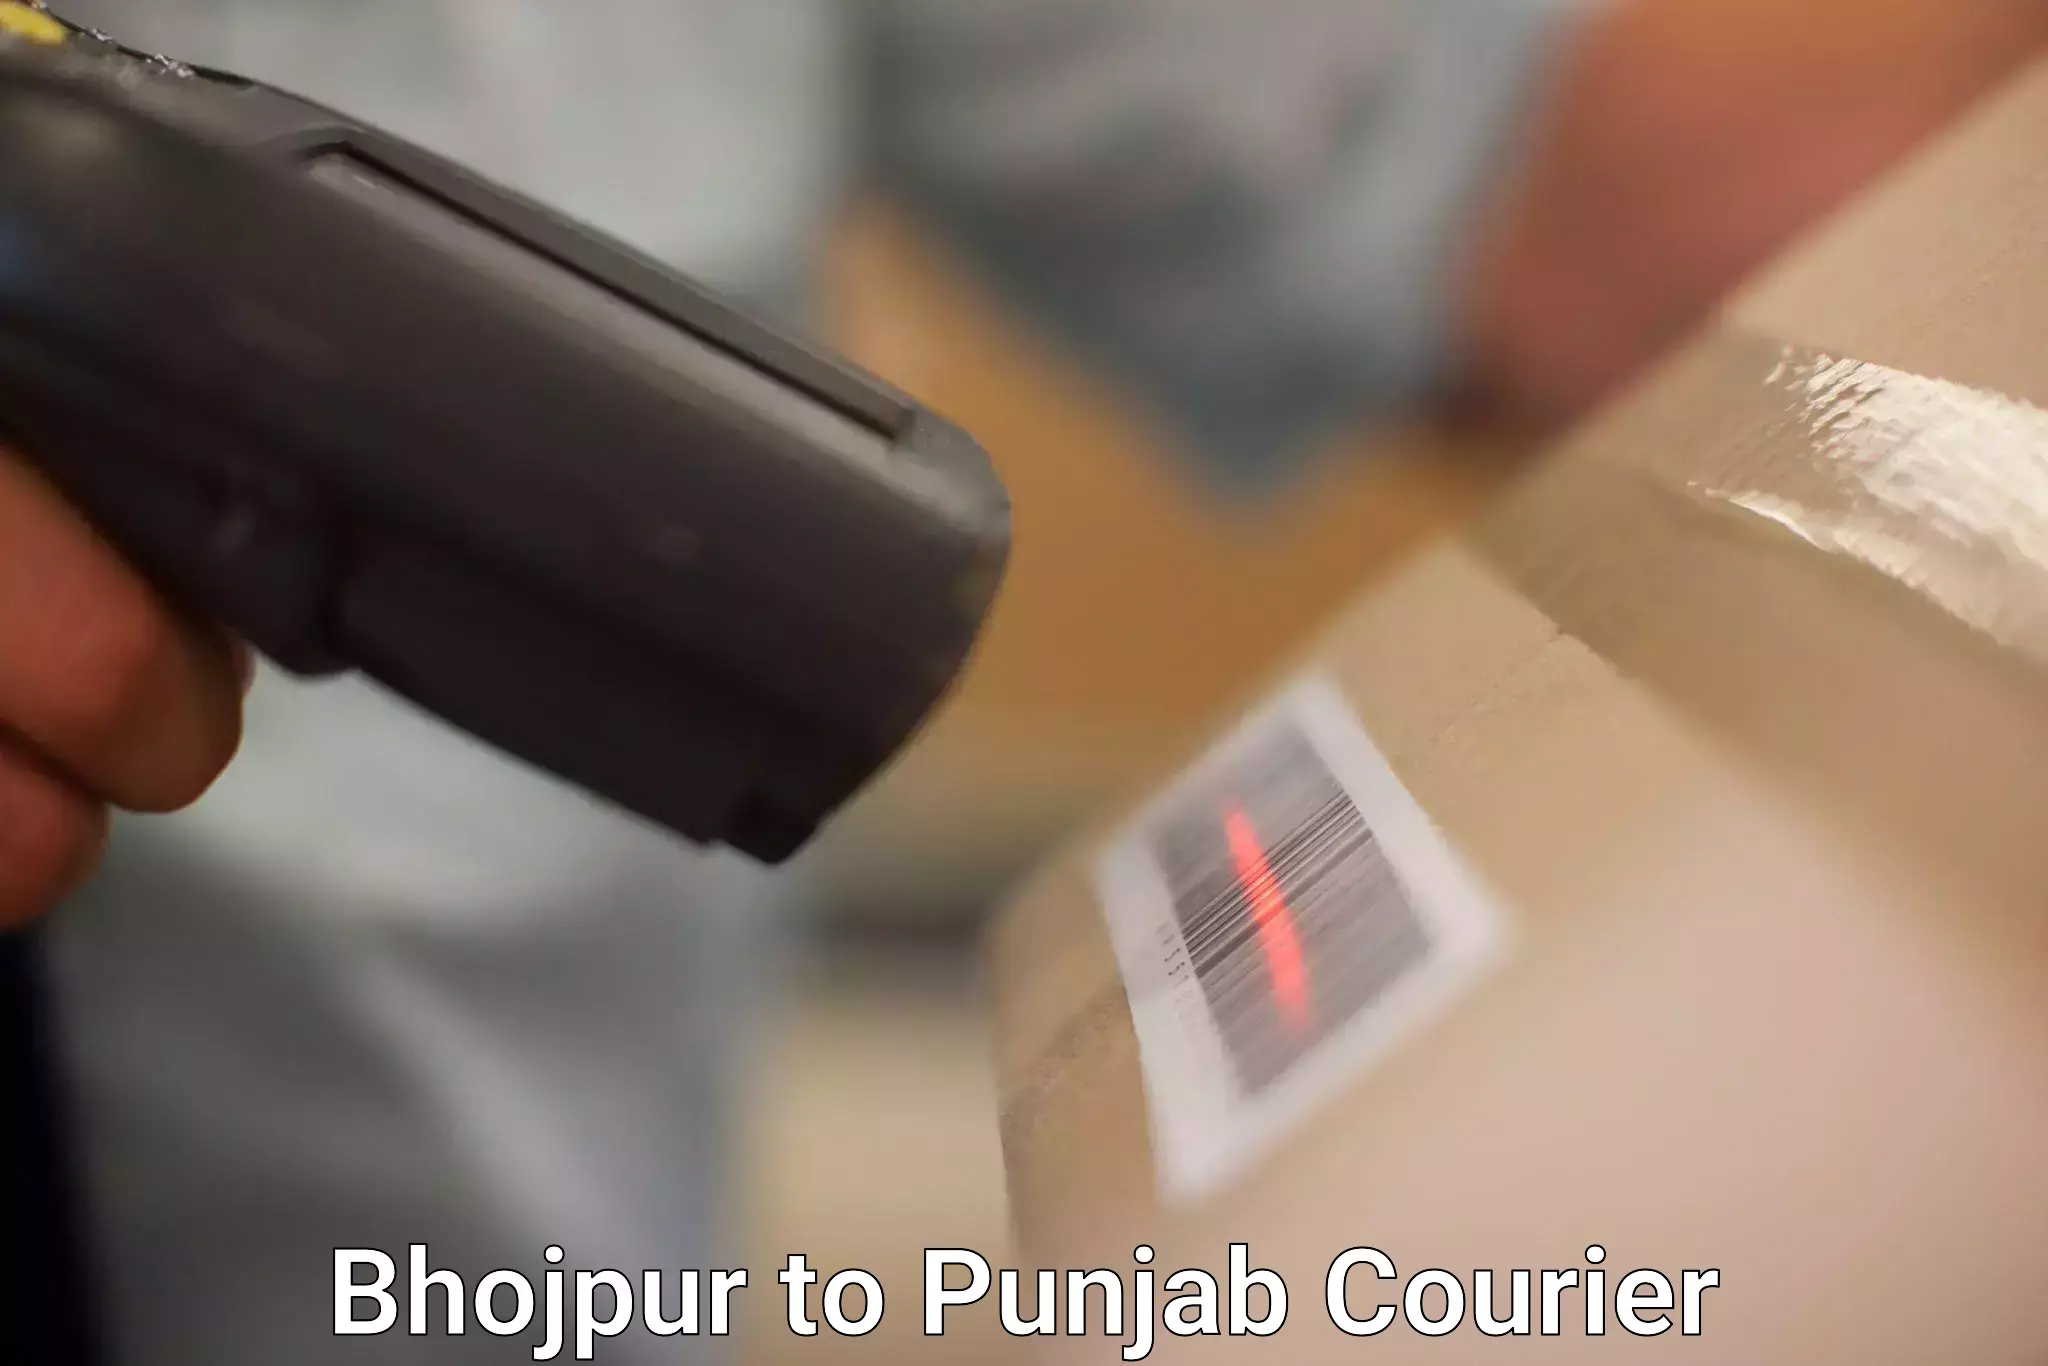 Efficient parcel service Bhojpur to Talwara